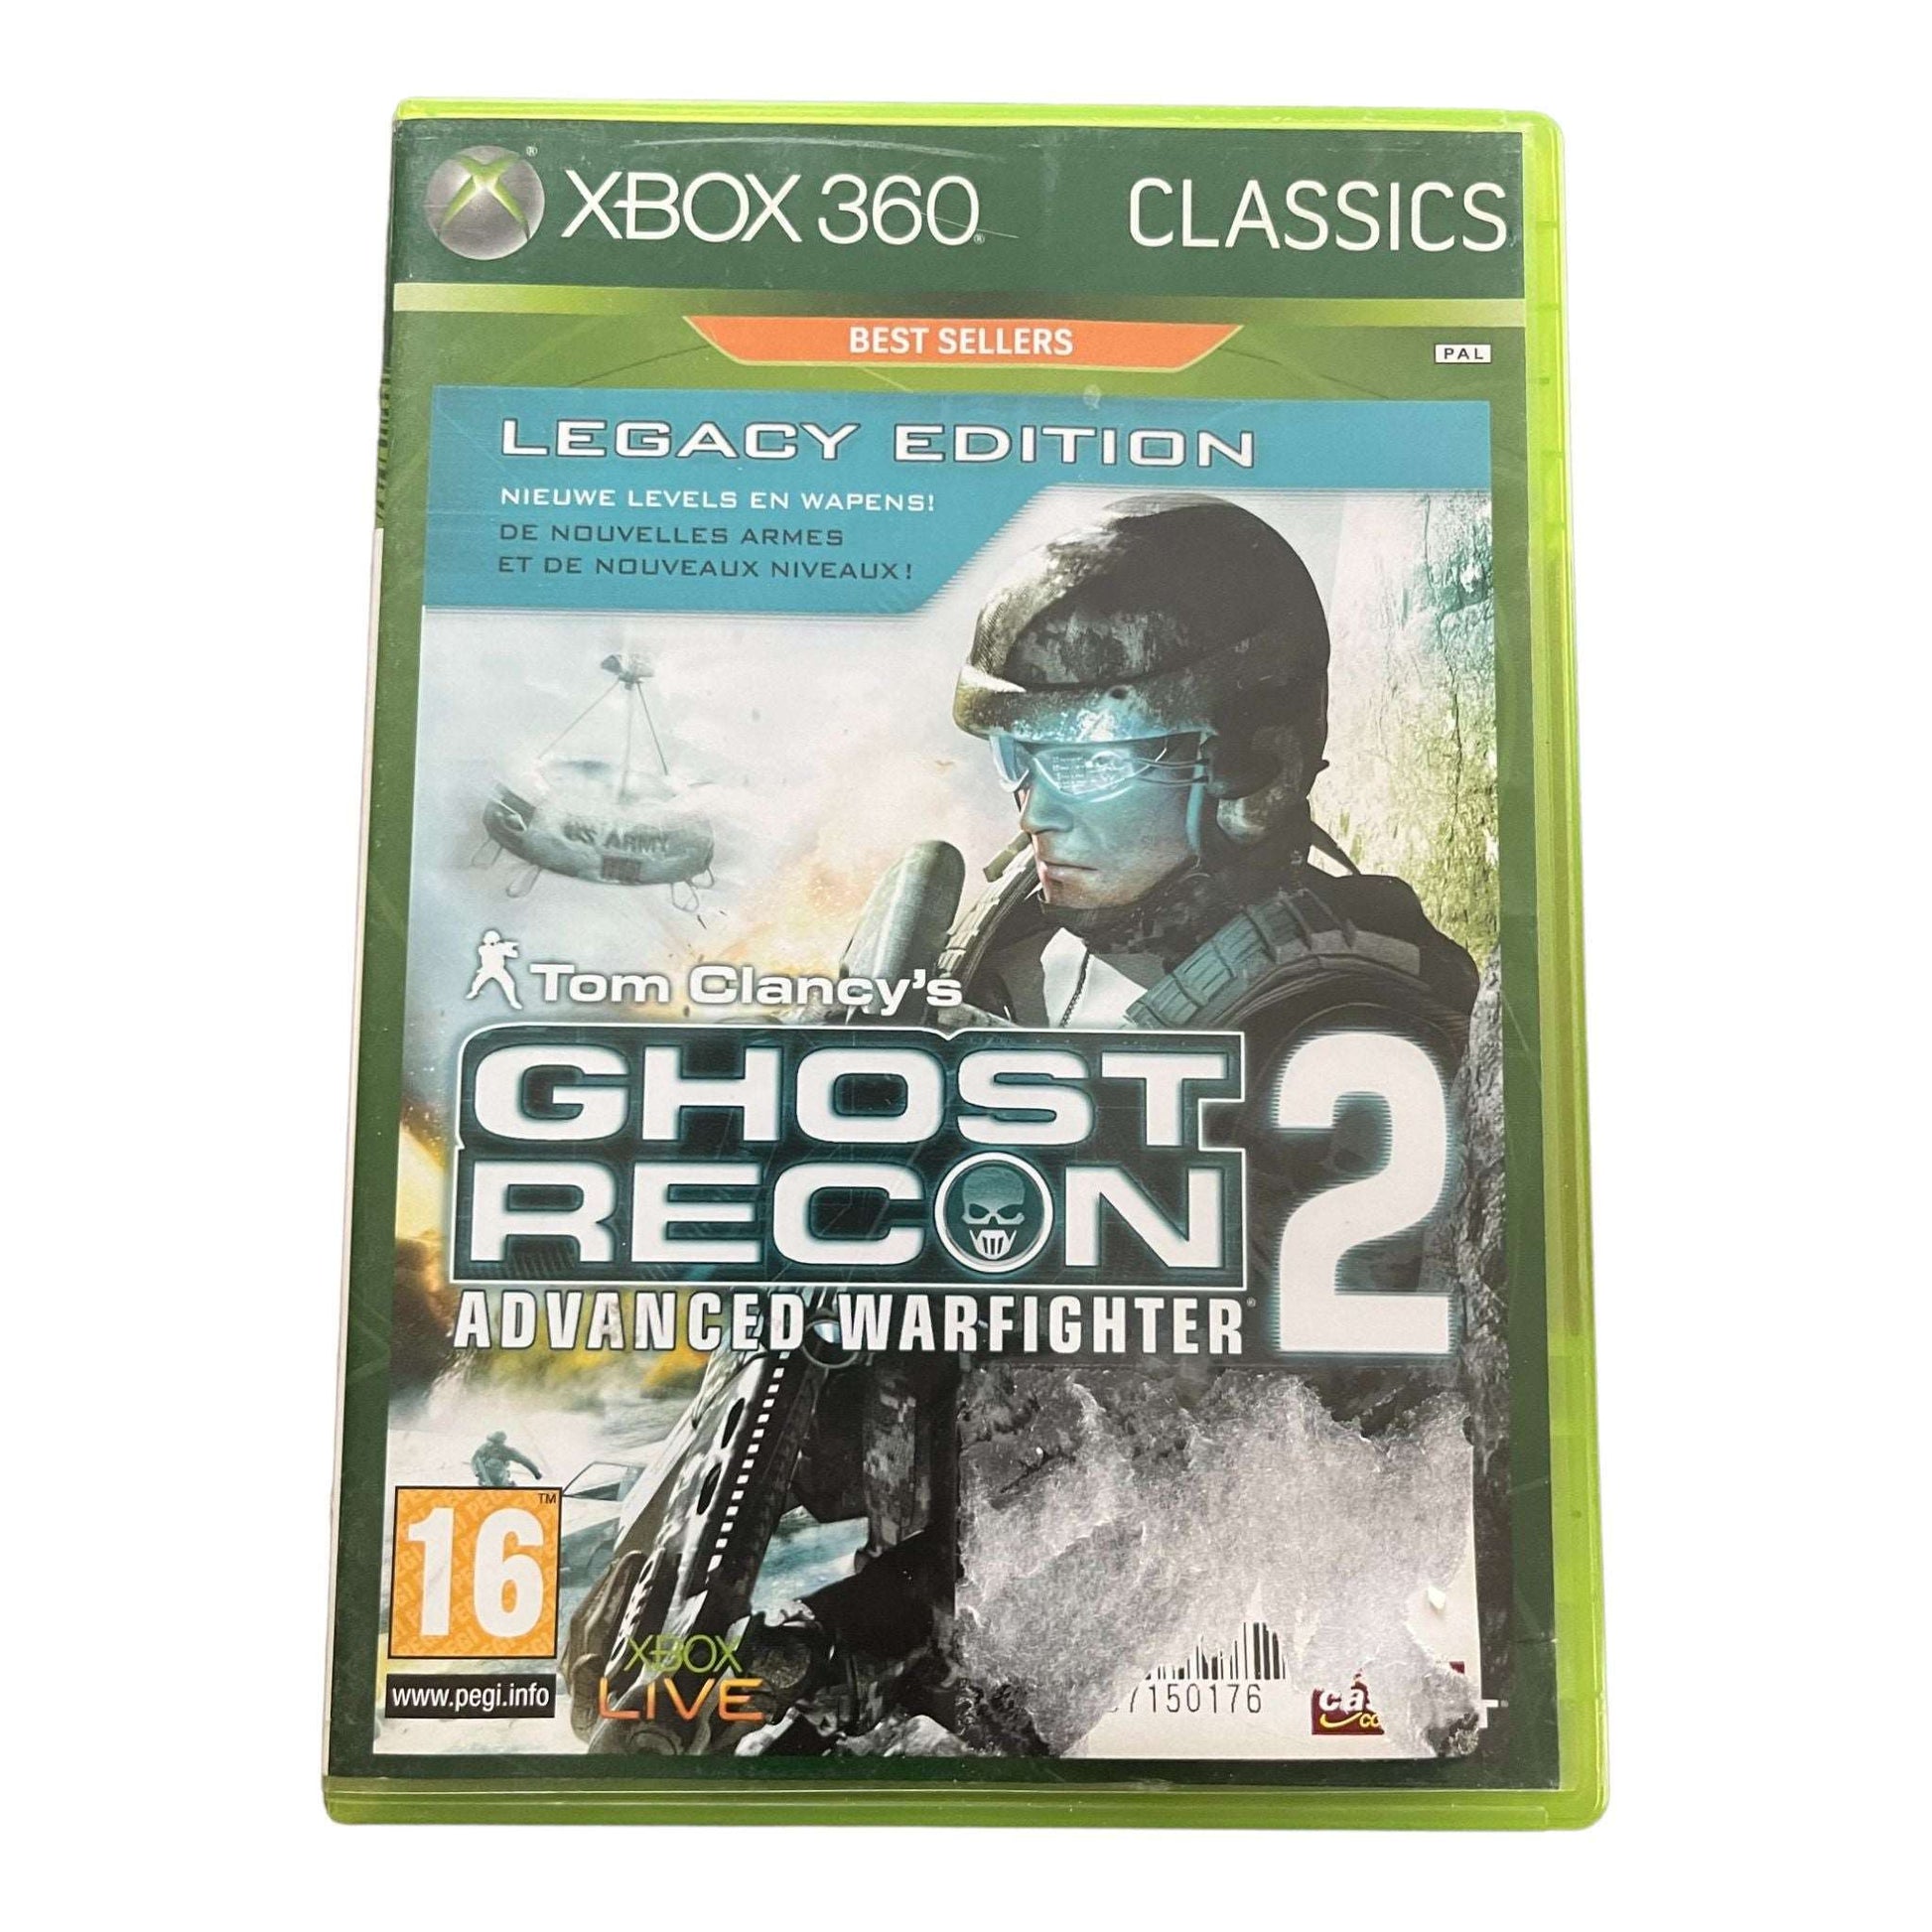 Ghost Recon 2 Advanced Warfighter - XBox 360 - Classics